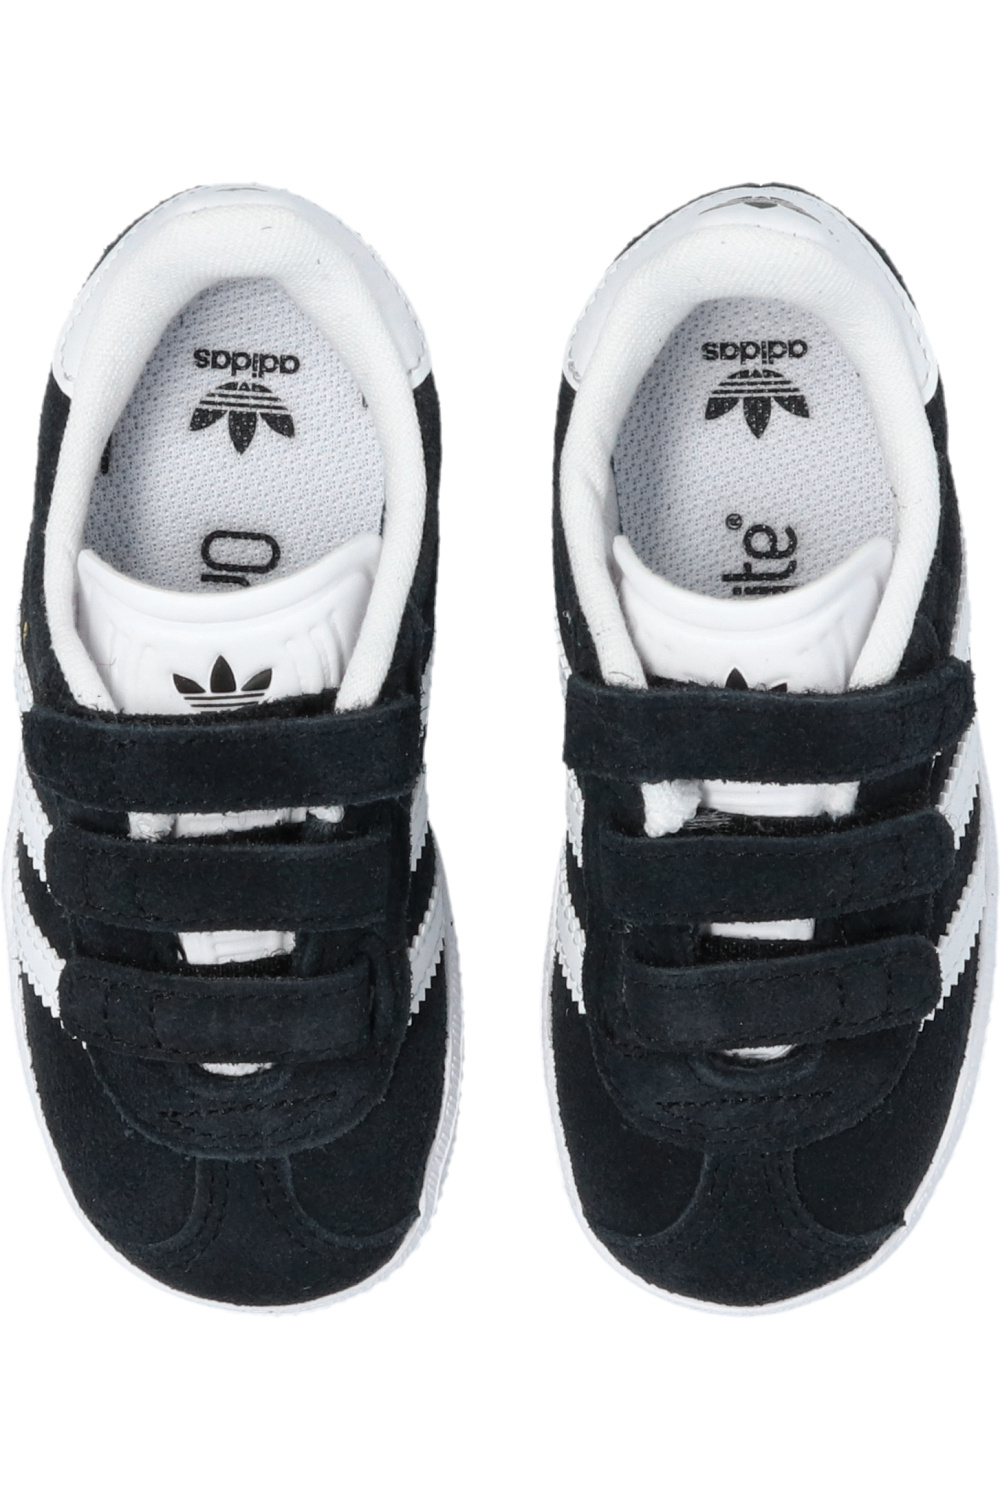 adidas white Kids ‘Gazelle’ sneakers